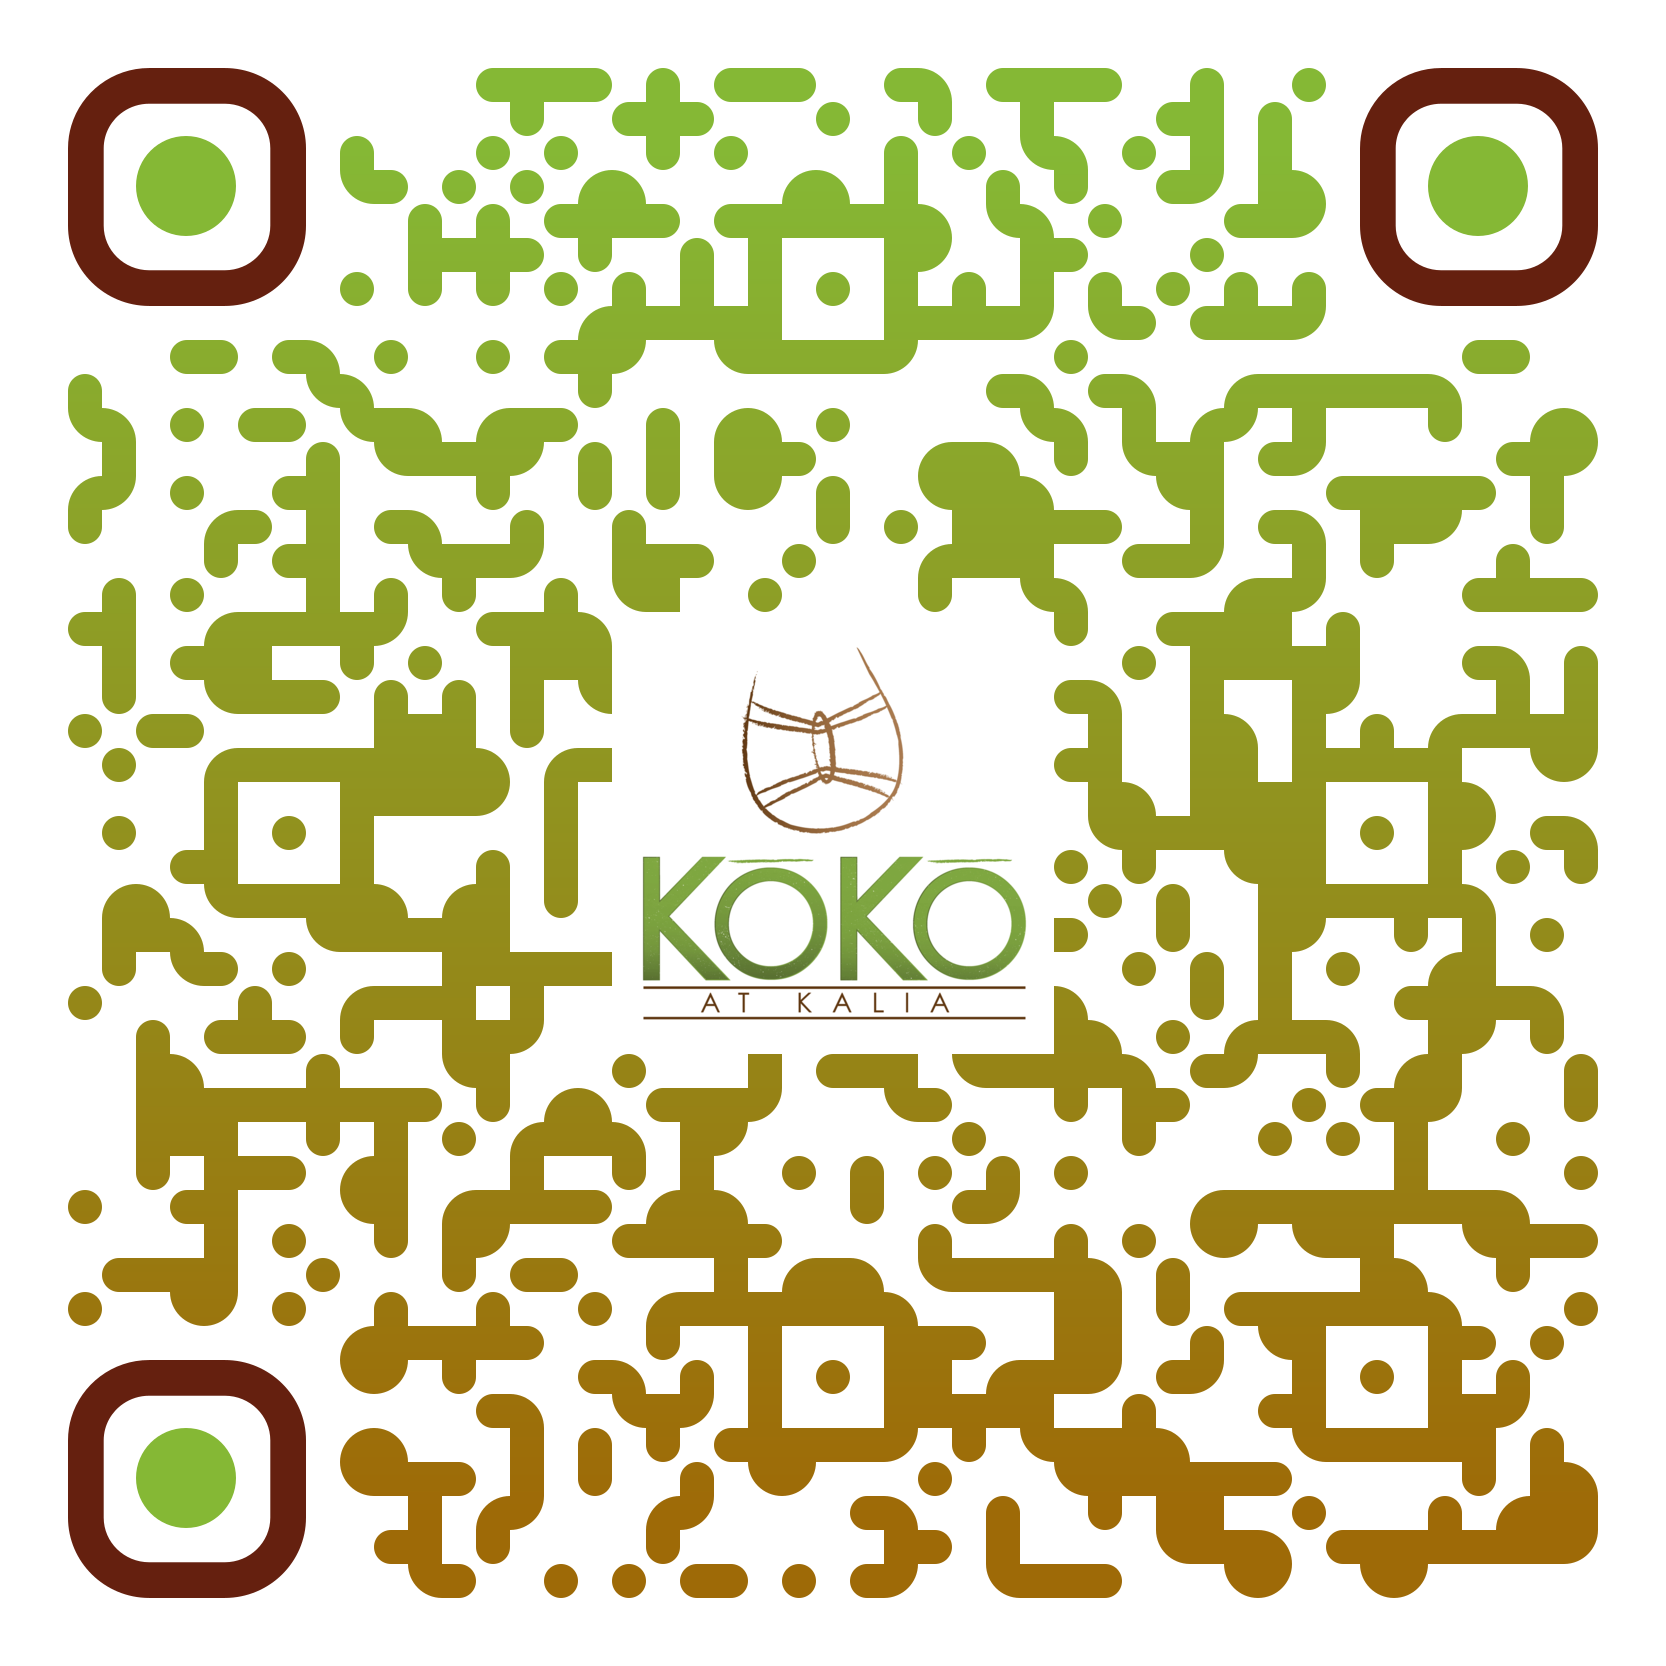 Koko-QR-code-2020-11.6.20.png